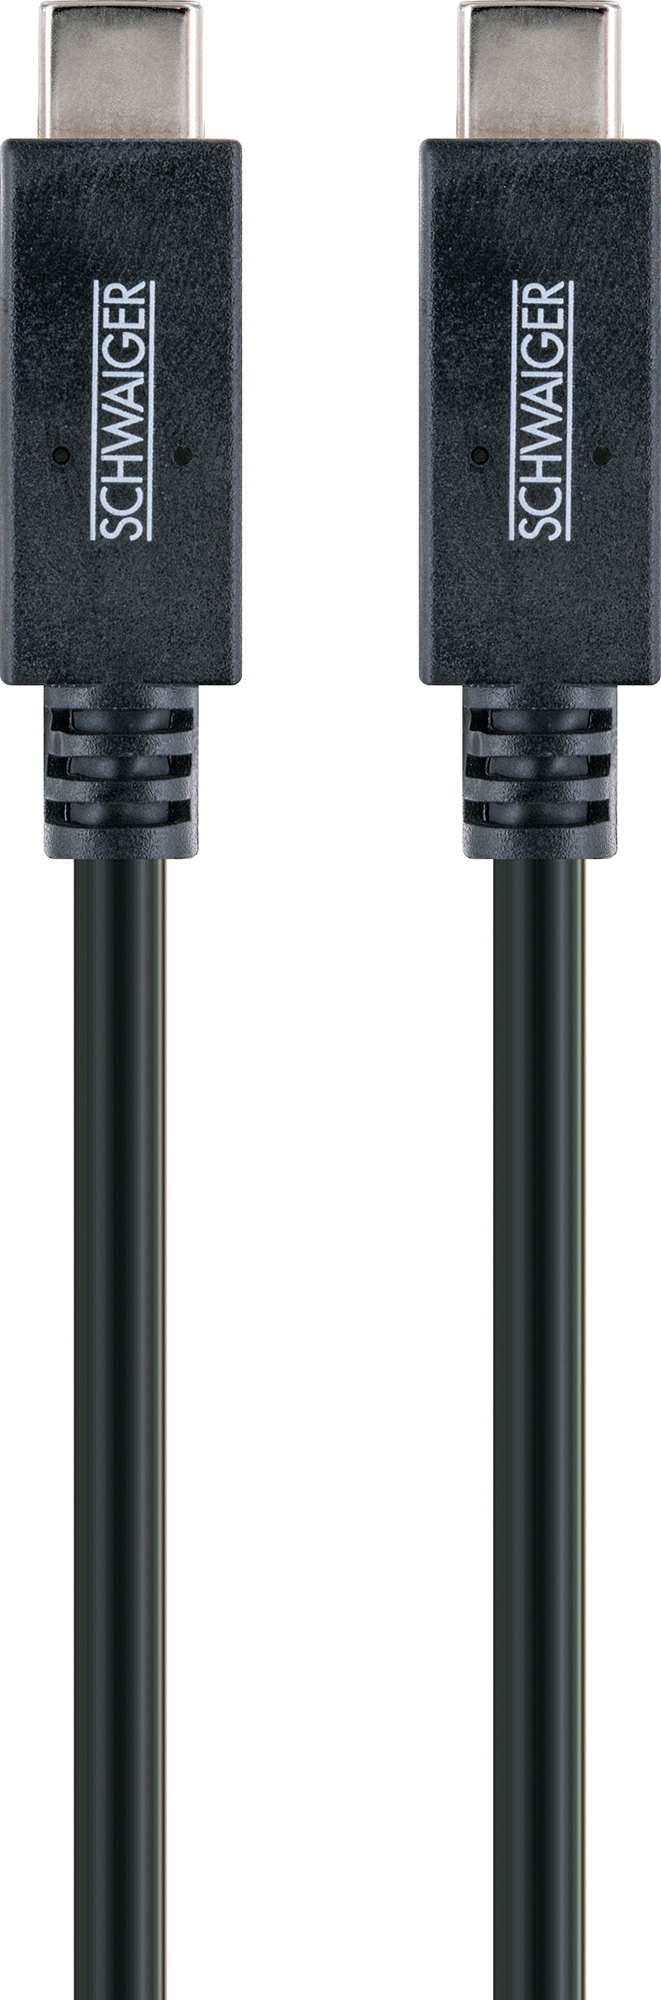 SCHWAIGER -LK101C 531-, C) Stecker, zu Sync & 3.1 (Type C C) Type Schwarz m, USB USB 3.1 1 Ladekabel (Type Stecker